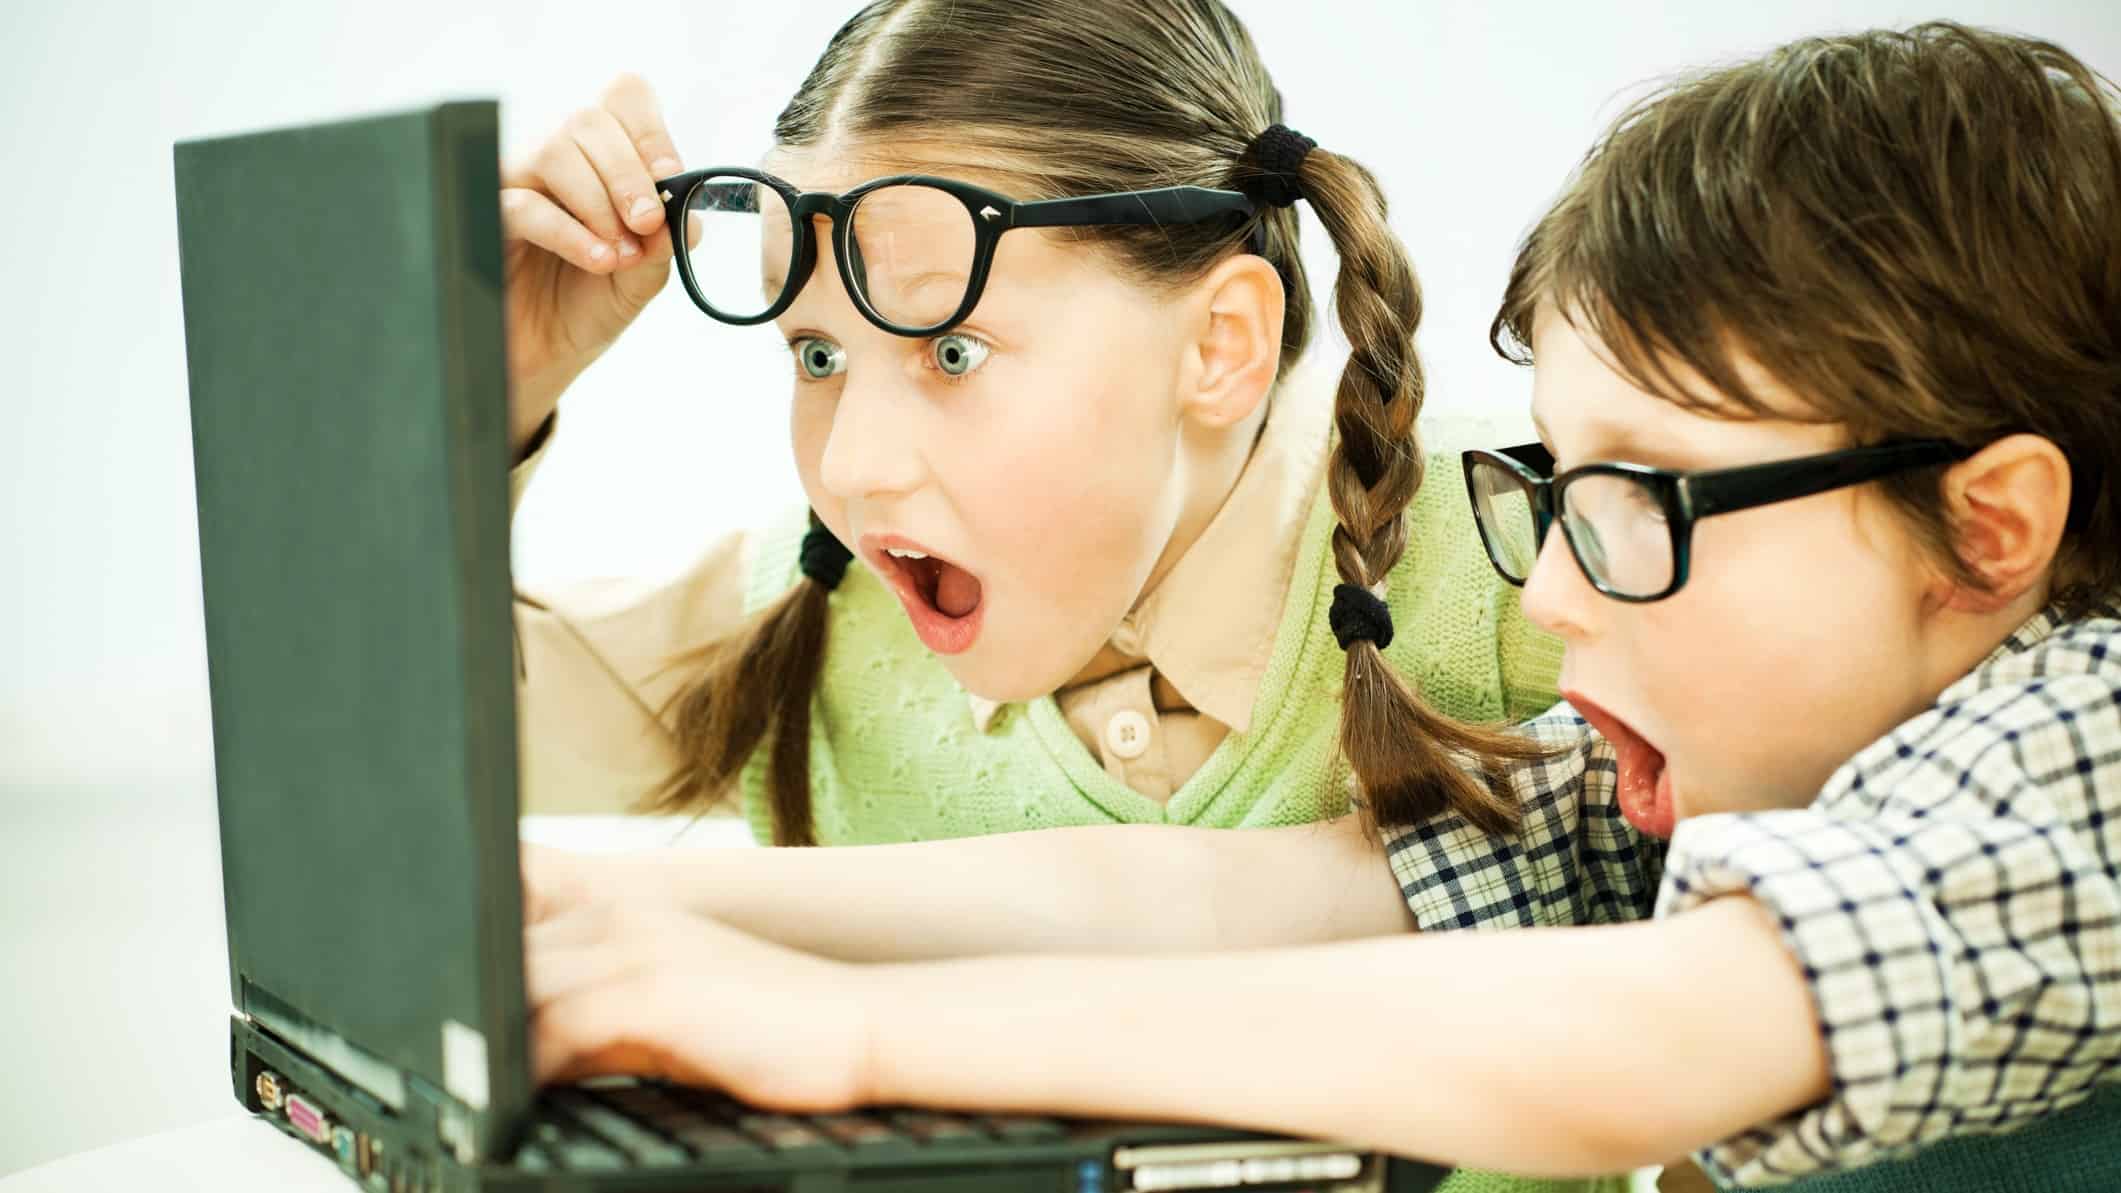 Сайт для подростков. Детям об интернете. Опасный интернет для детей. Компьютер для детей. Подросток в сети интернет.